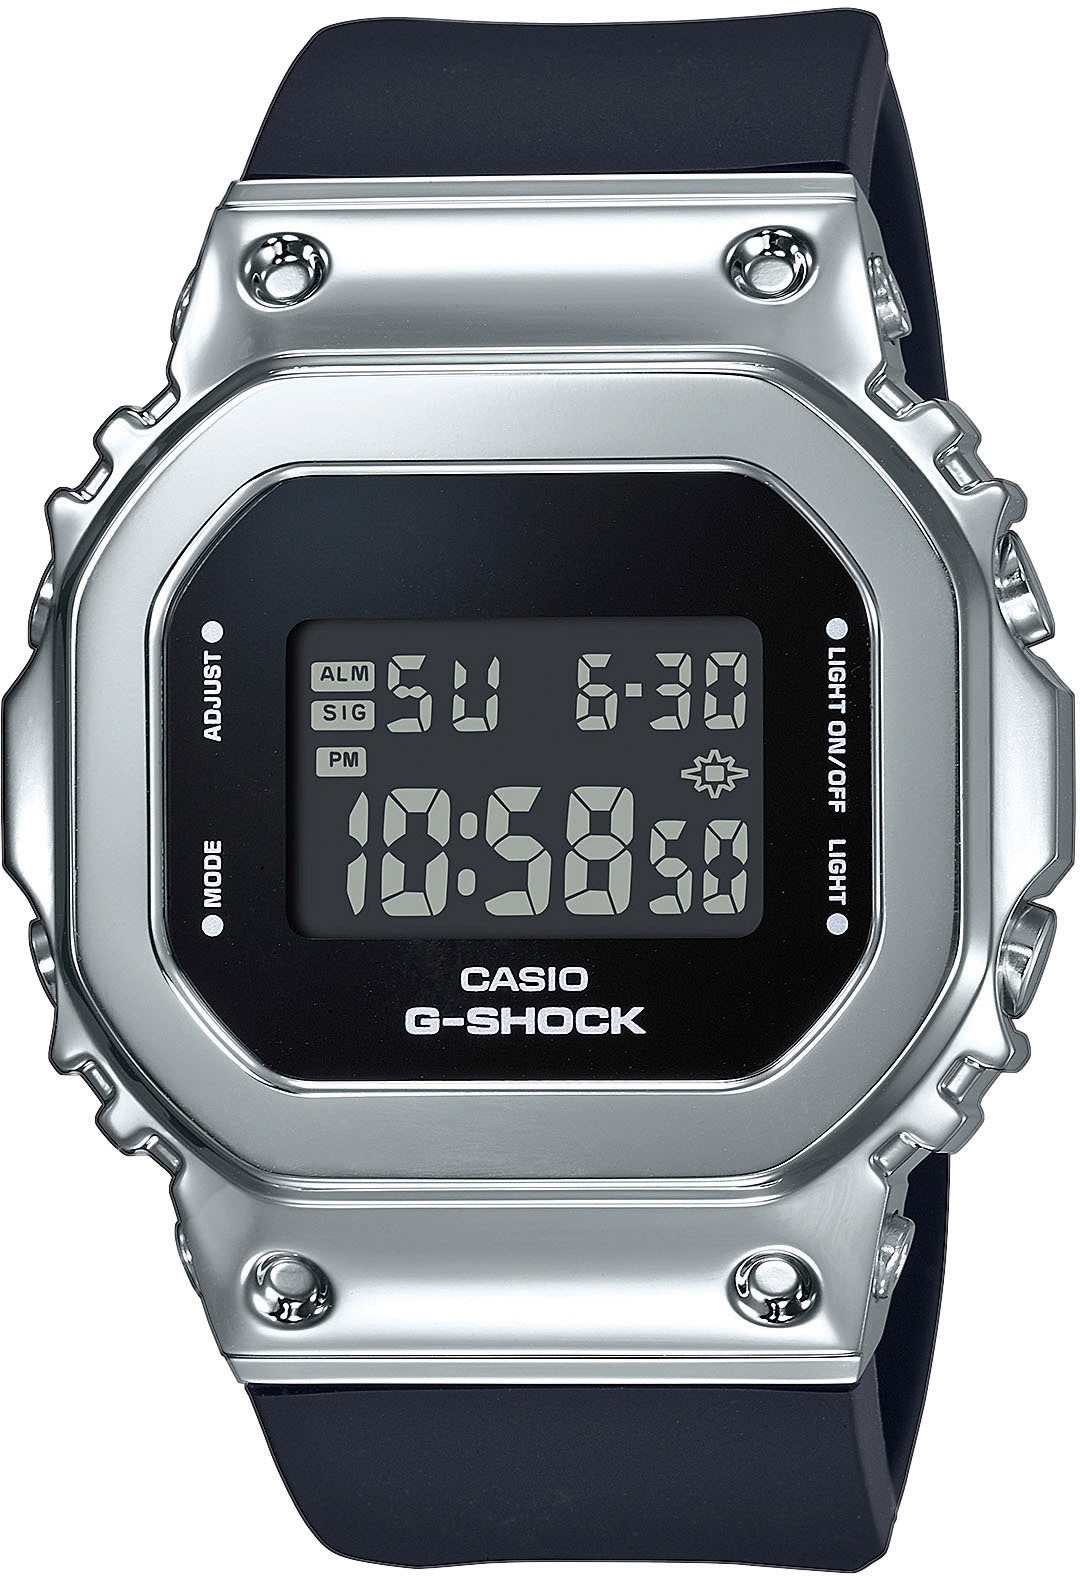 CASIO G-SHOCK Chronograph »GM-S5600-1ER«, Quarzuhr, Armbanduhr, Damen, Herren, digital, bis 20 bar wasserdicht